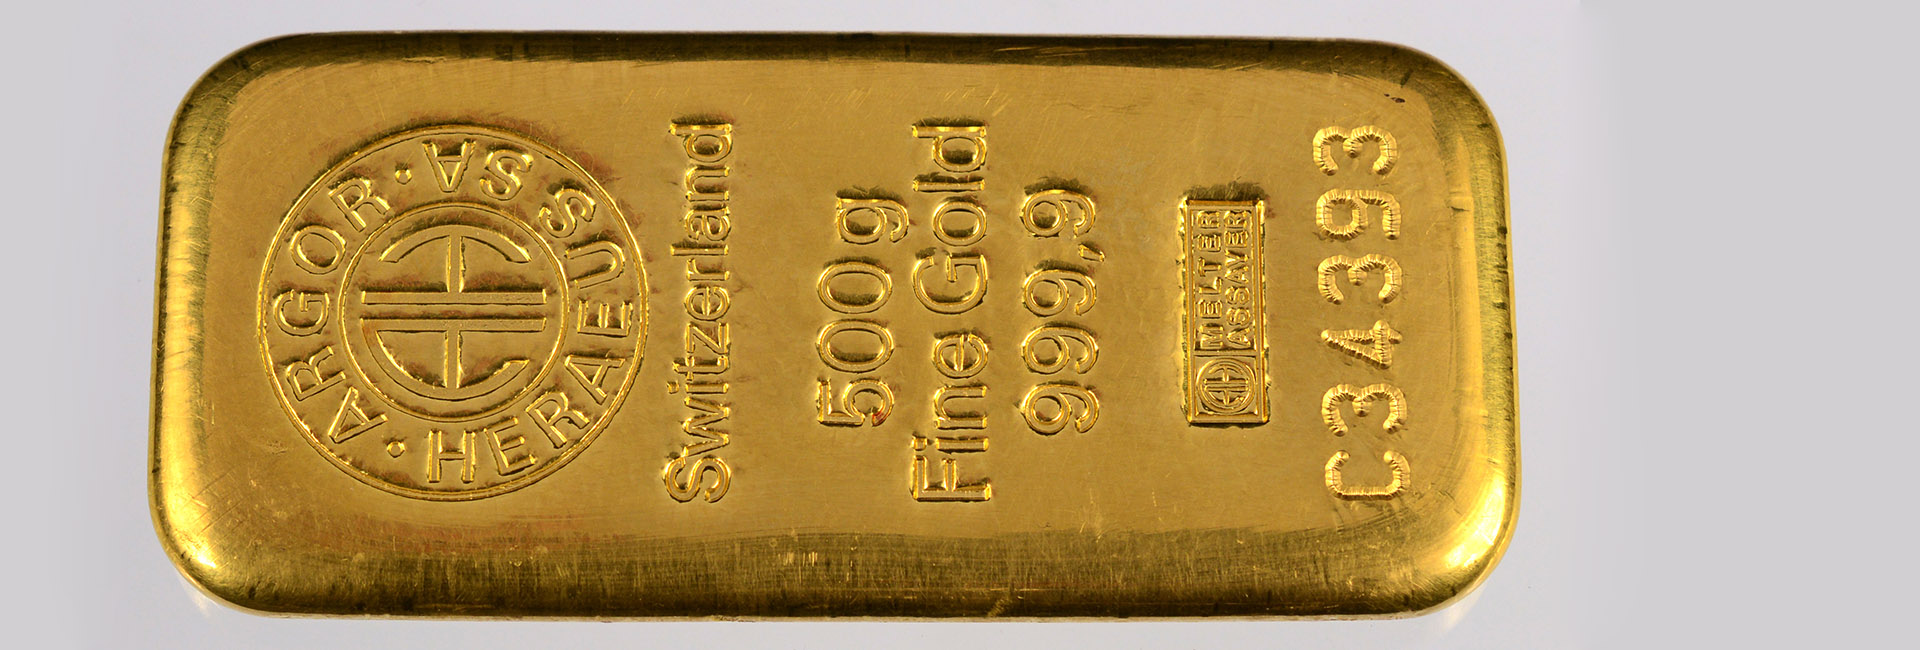 THE BUYER PREMIUM IN THIS AUCTION JUST 5%| [Argor Heraeus 500 Gram Gold Bullion Bar 999.9 Fine]